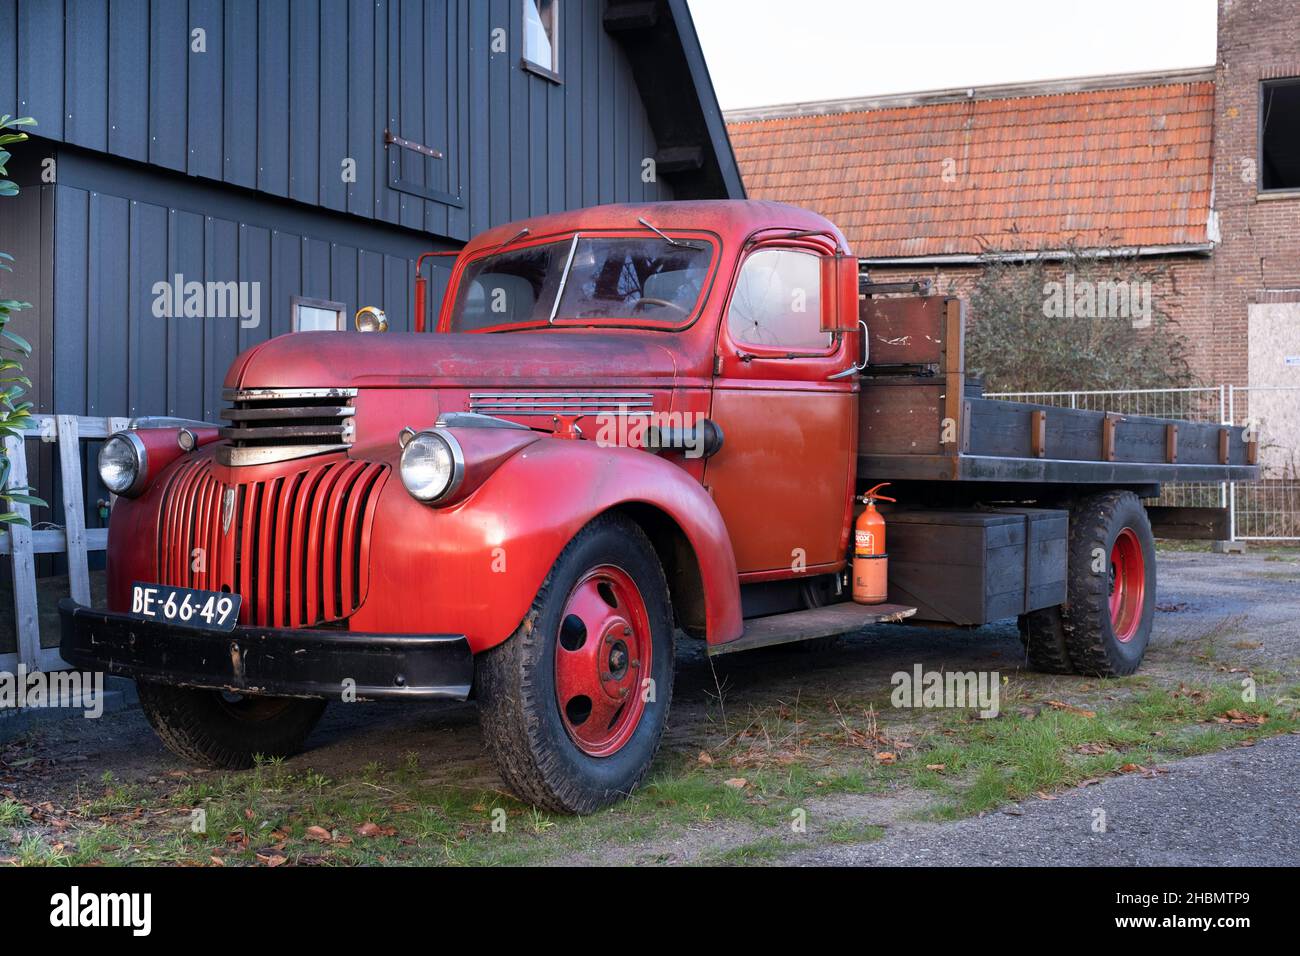 Vieux pick-up Chevrolet rouge de 1942 avec plate-forme de chargement en bois et enregistrement néerlandais, debout devant un hangar Banque D'Images